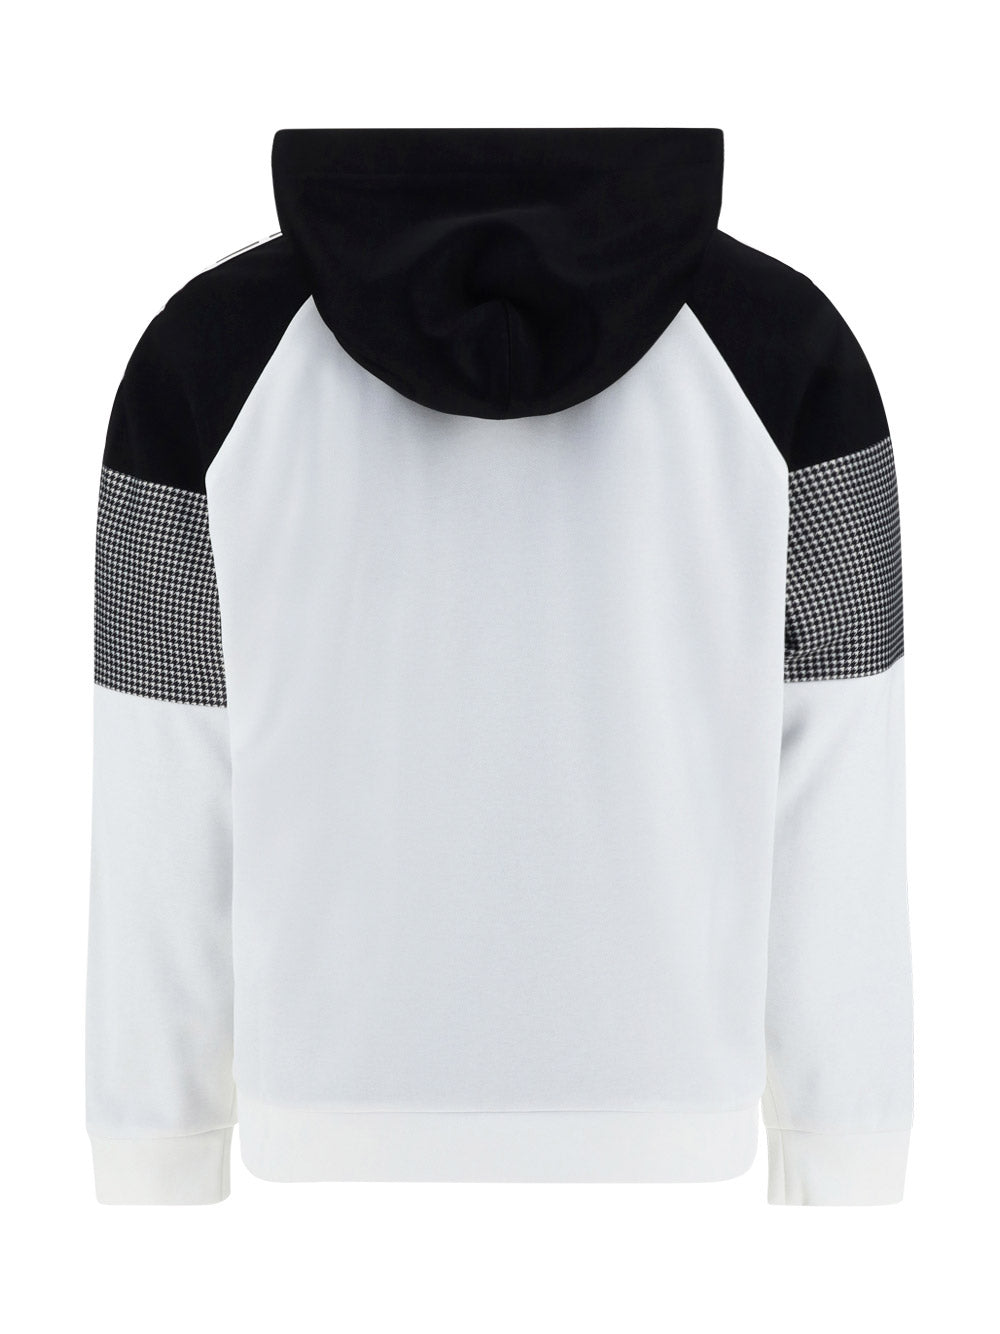 Sweatshirt - White / Black